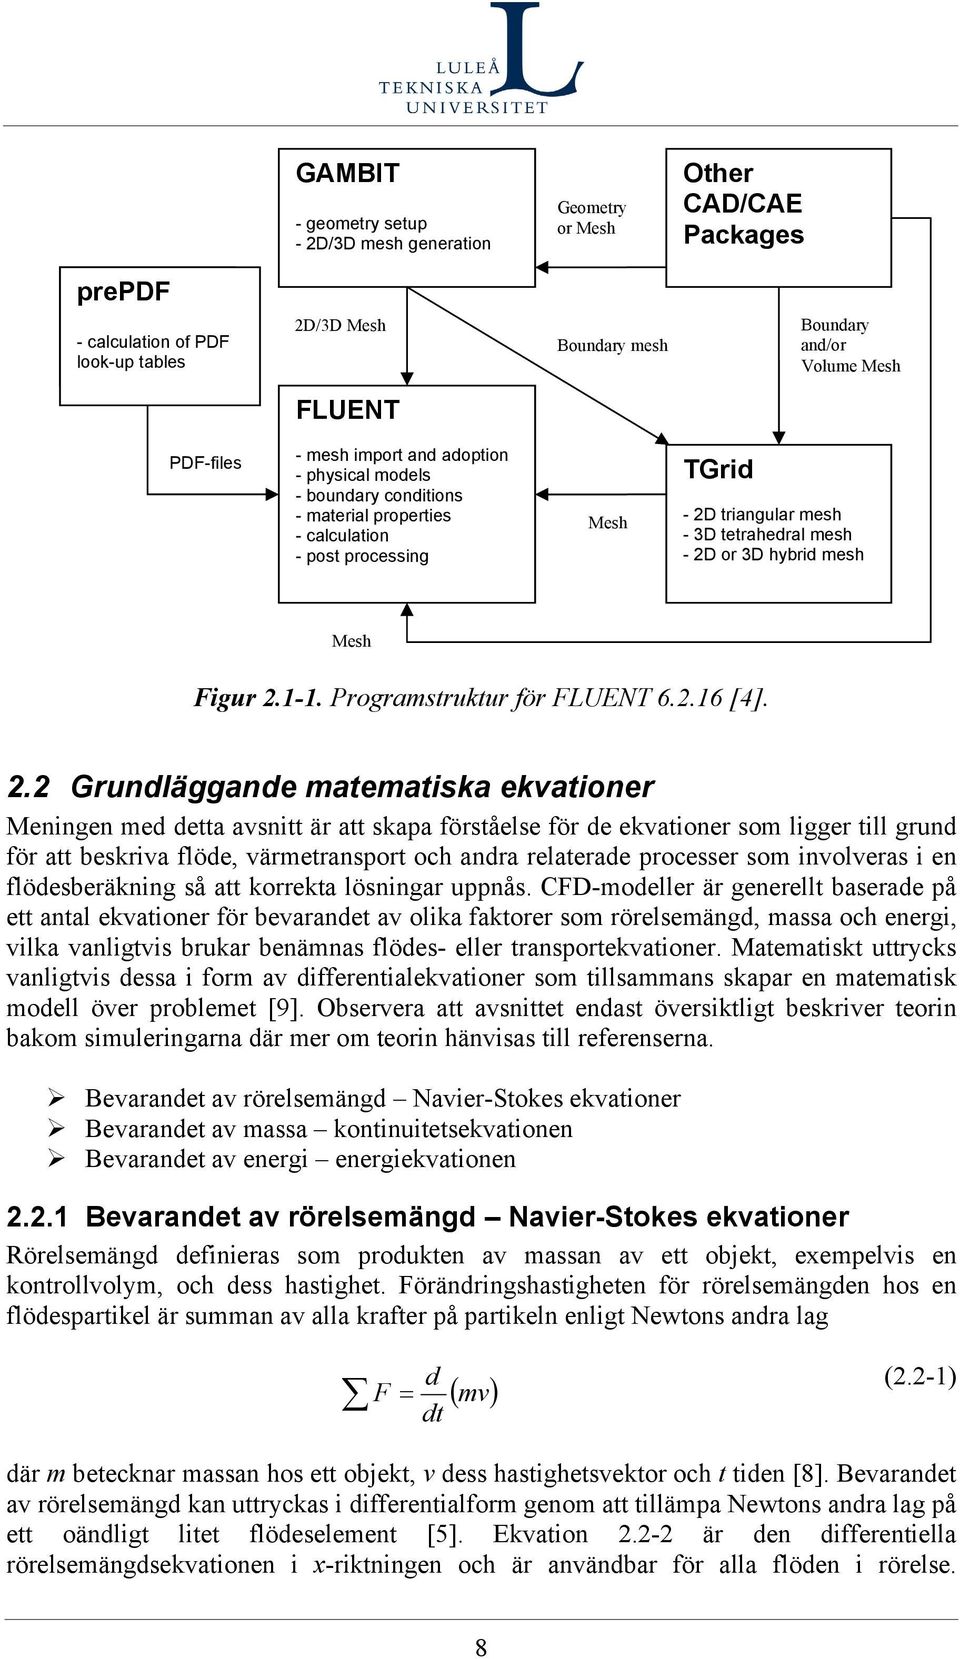 Programstrktr för FLUENT 6.2.16 [4]. 2.